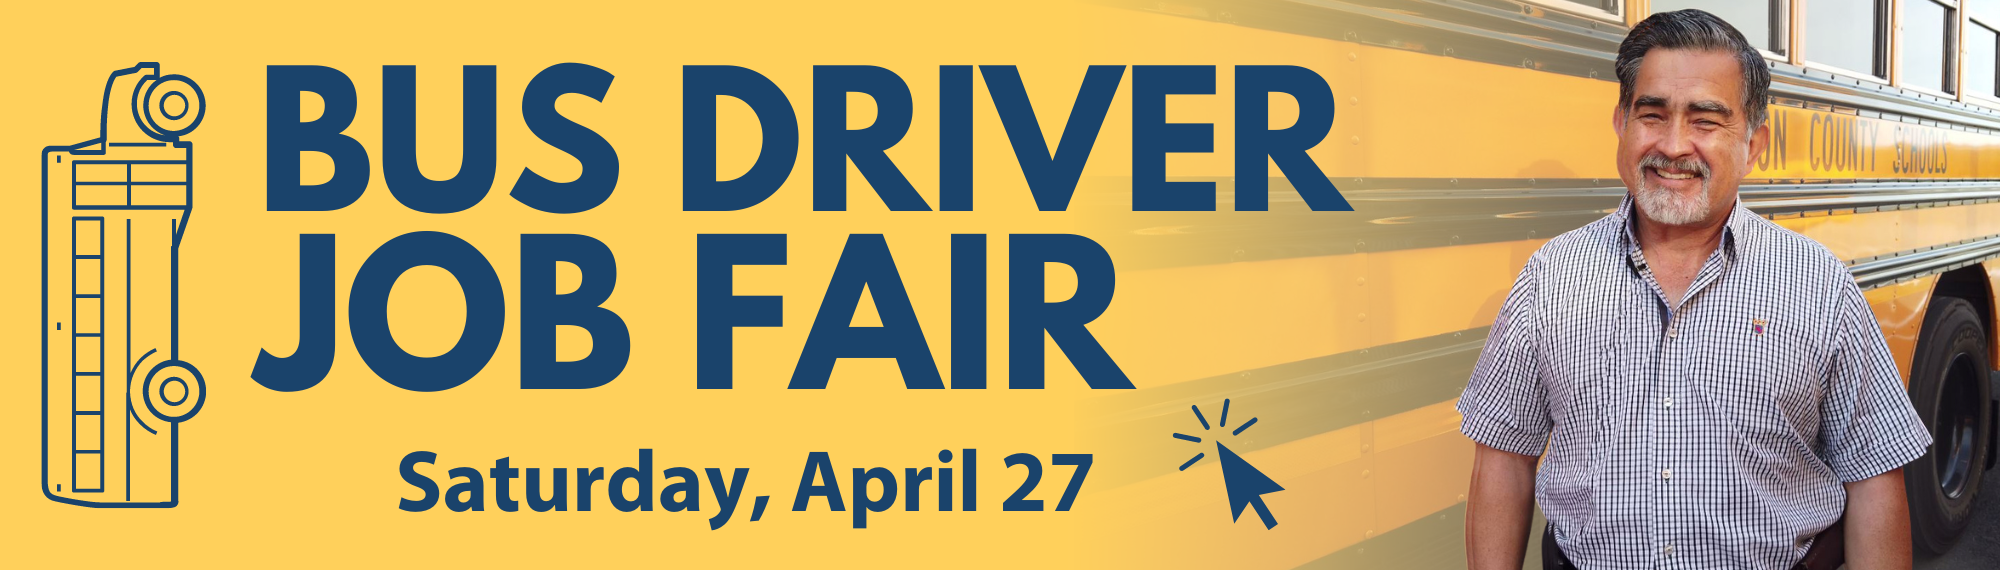 Bus Driver Job Fair - Saturday, April 27.  Click for more.